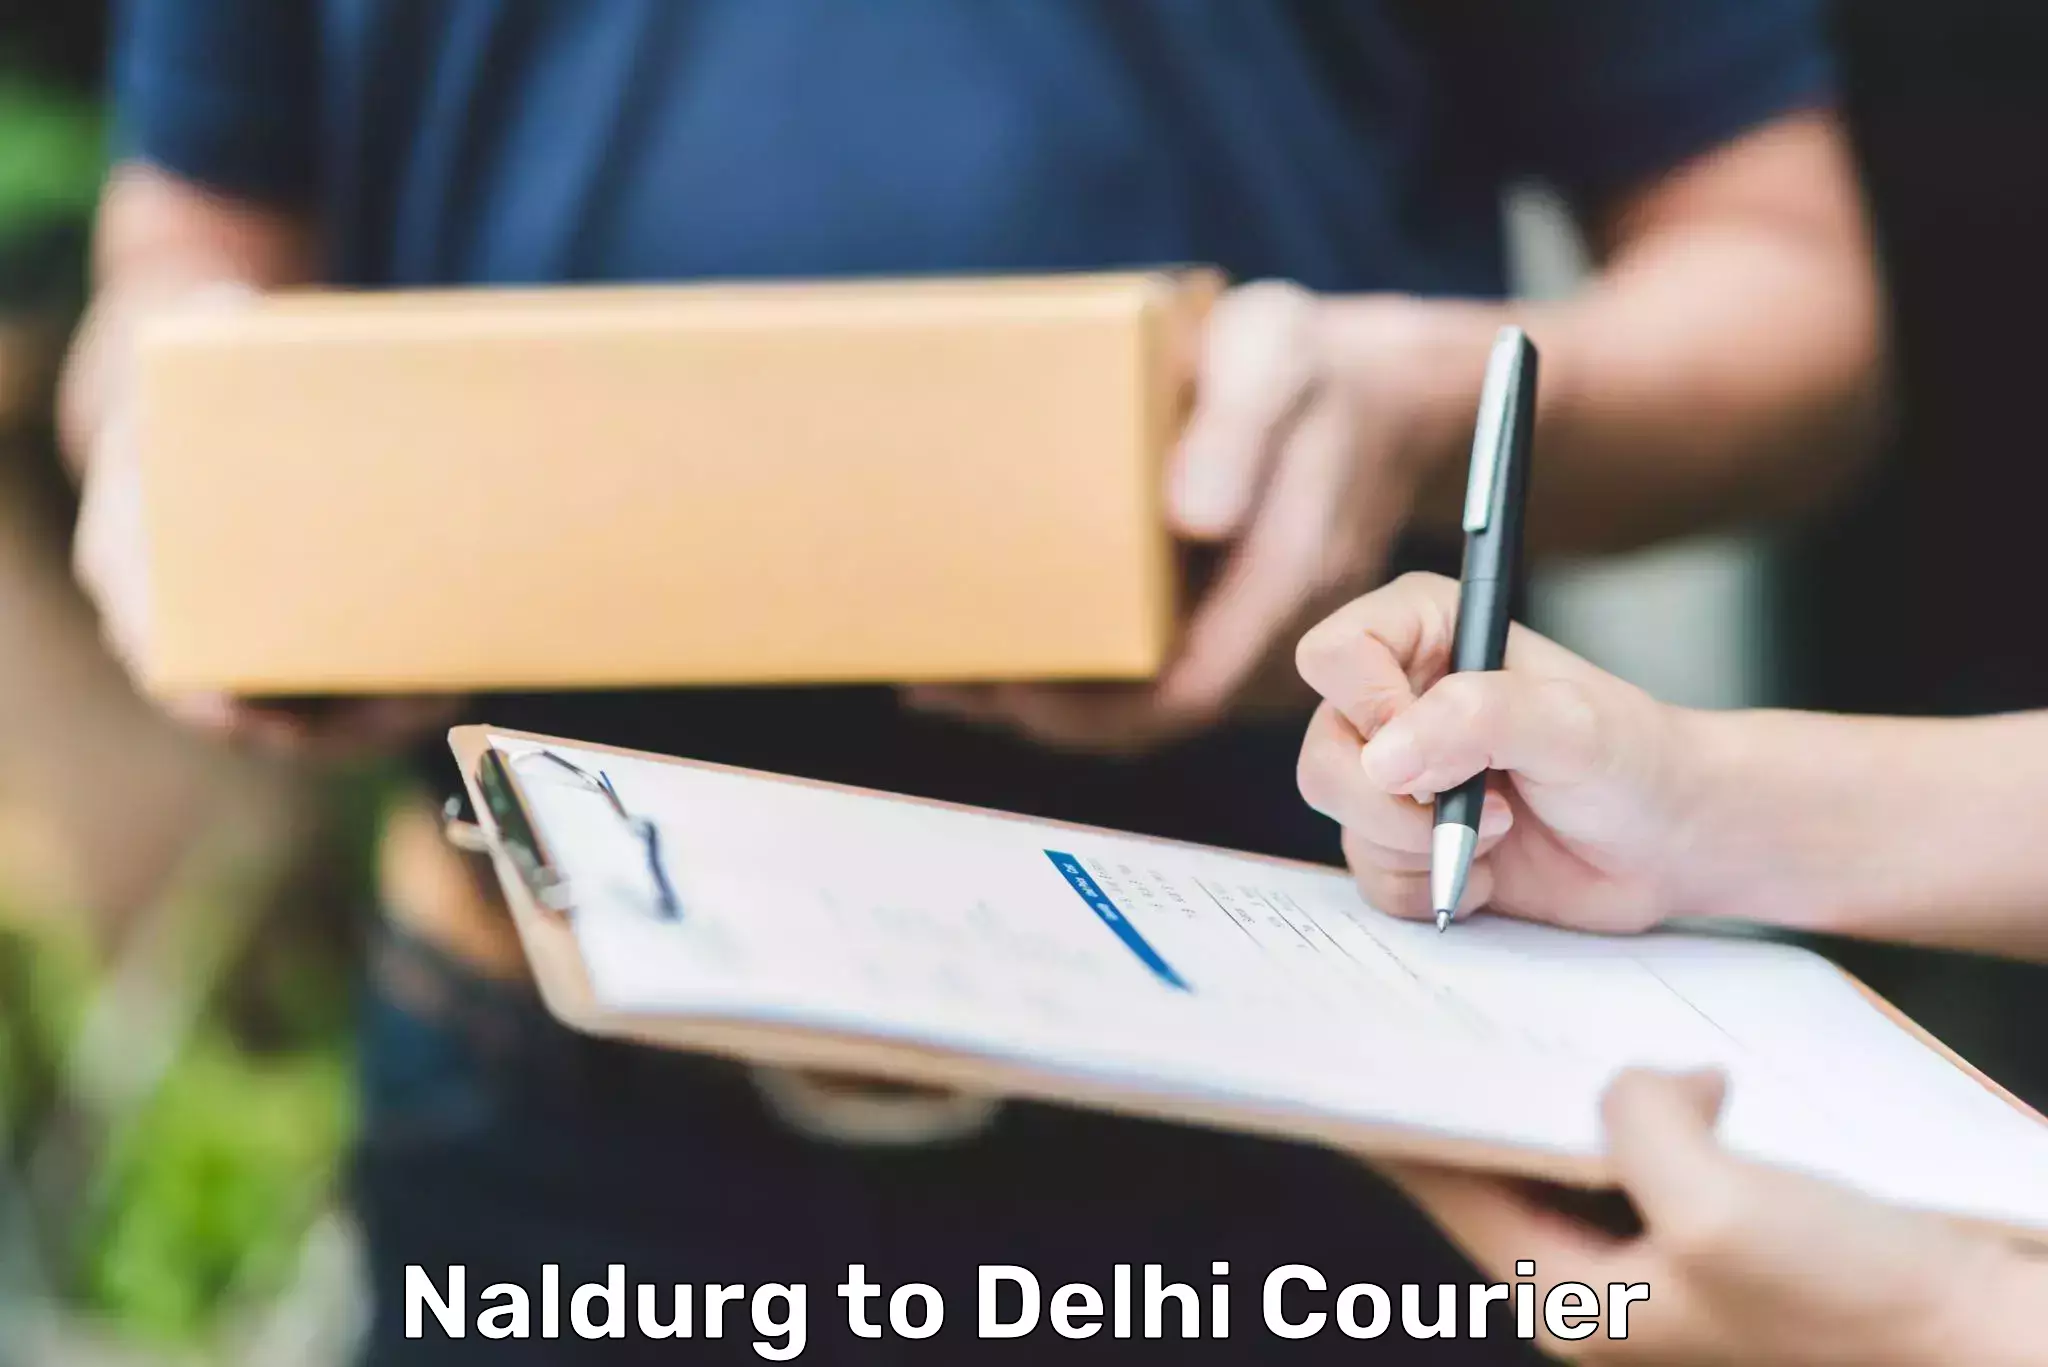 Digital courier platforms Naldurg to Indraprastha